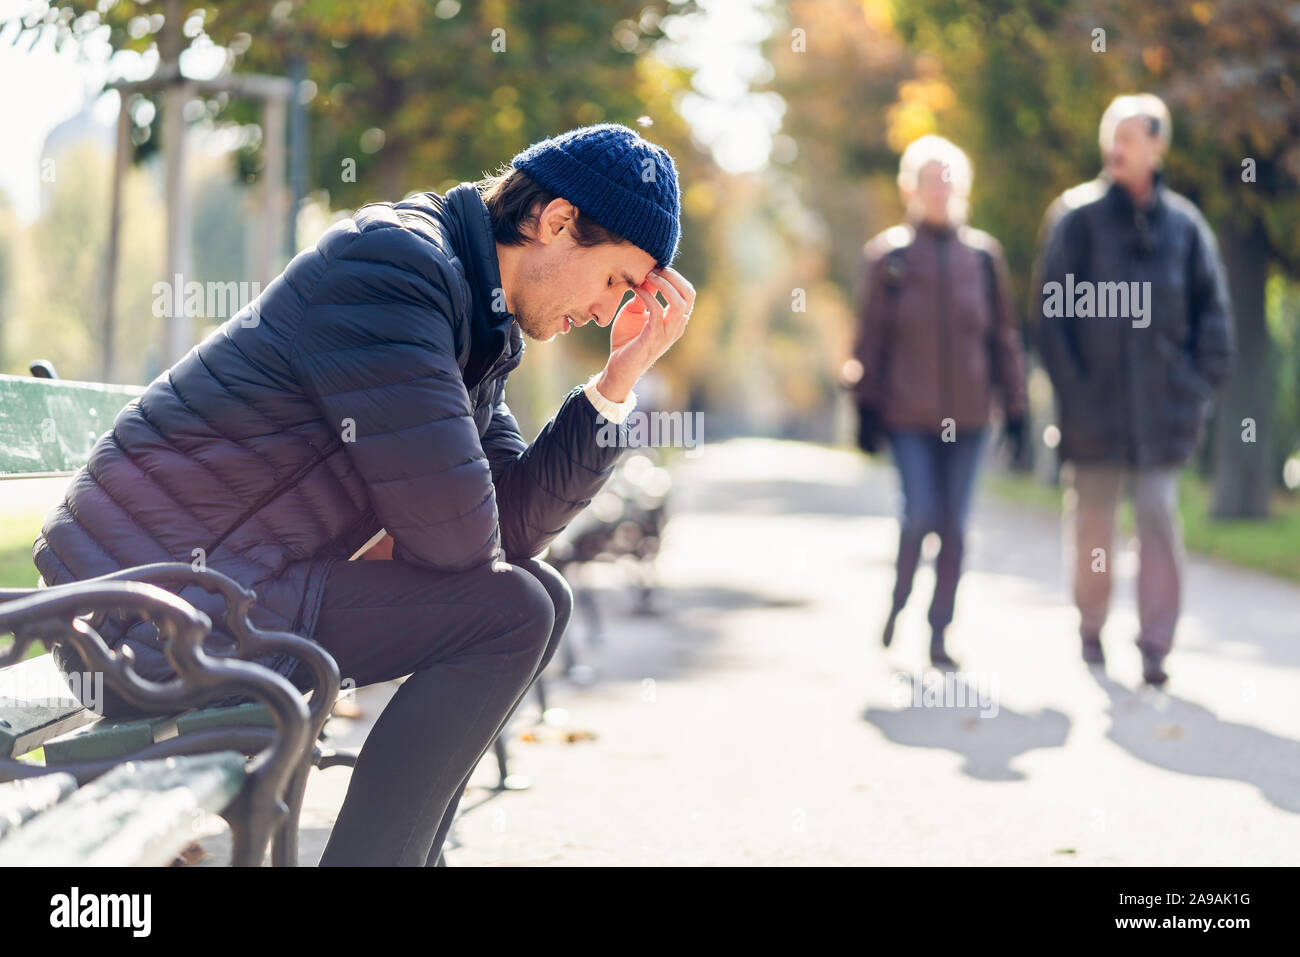 Junge besorgt, der Mensch ist in seinem Gesicht. Er sitzt auf einer Bank während der sonnigen Herbsttag. Die laufen im Hintergrund. Stockfoto